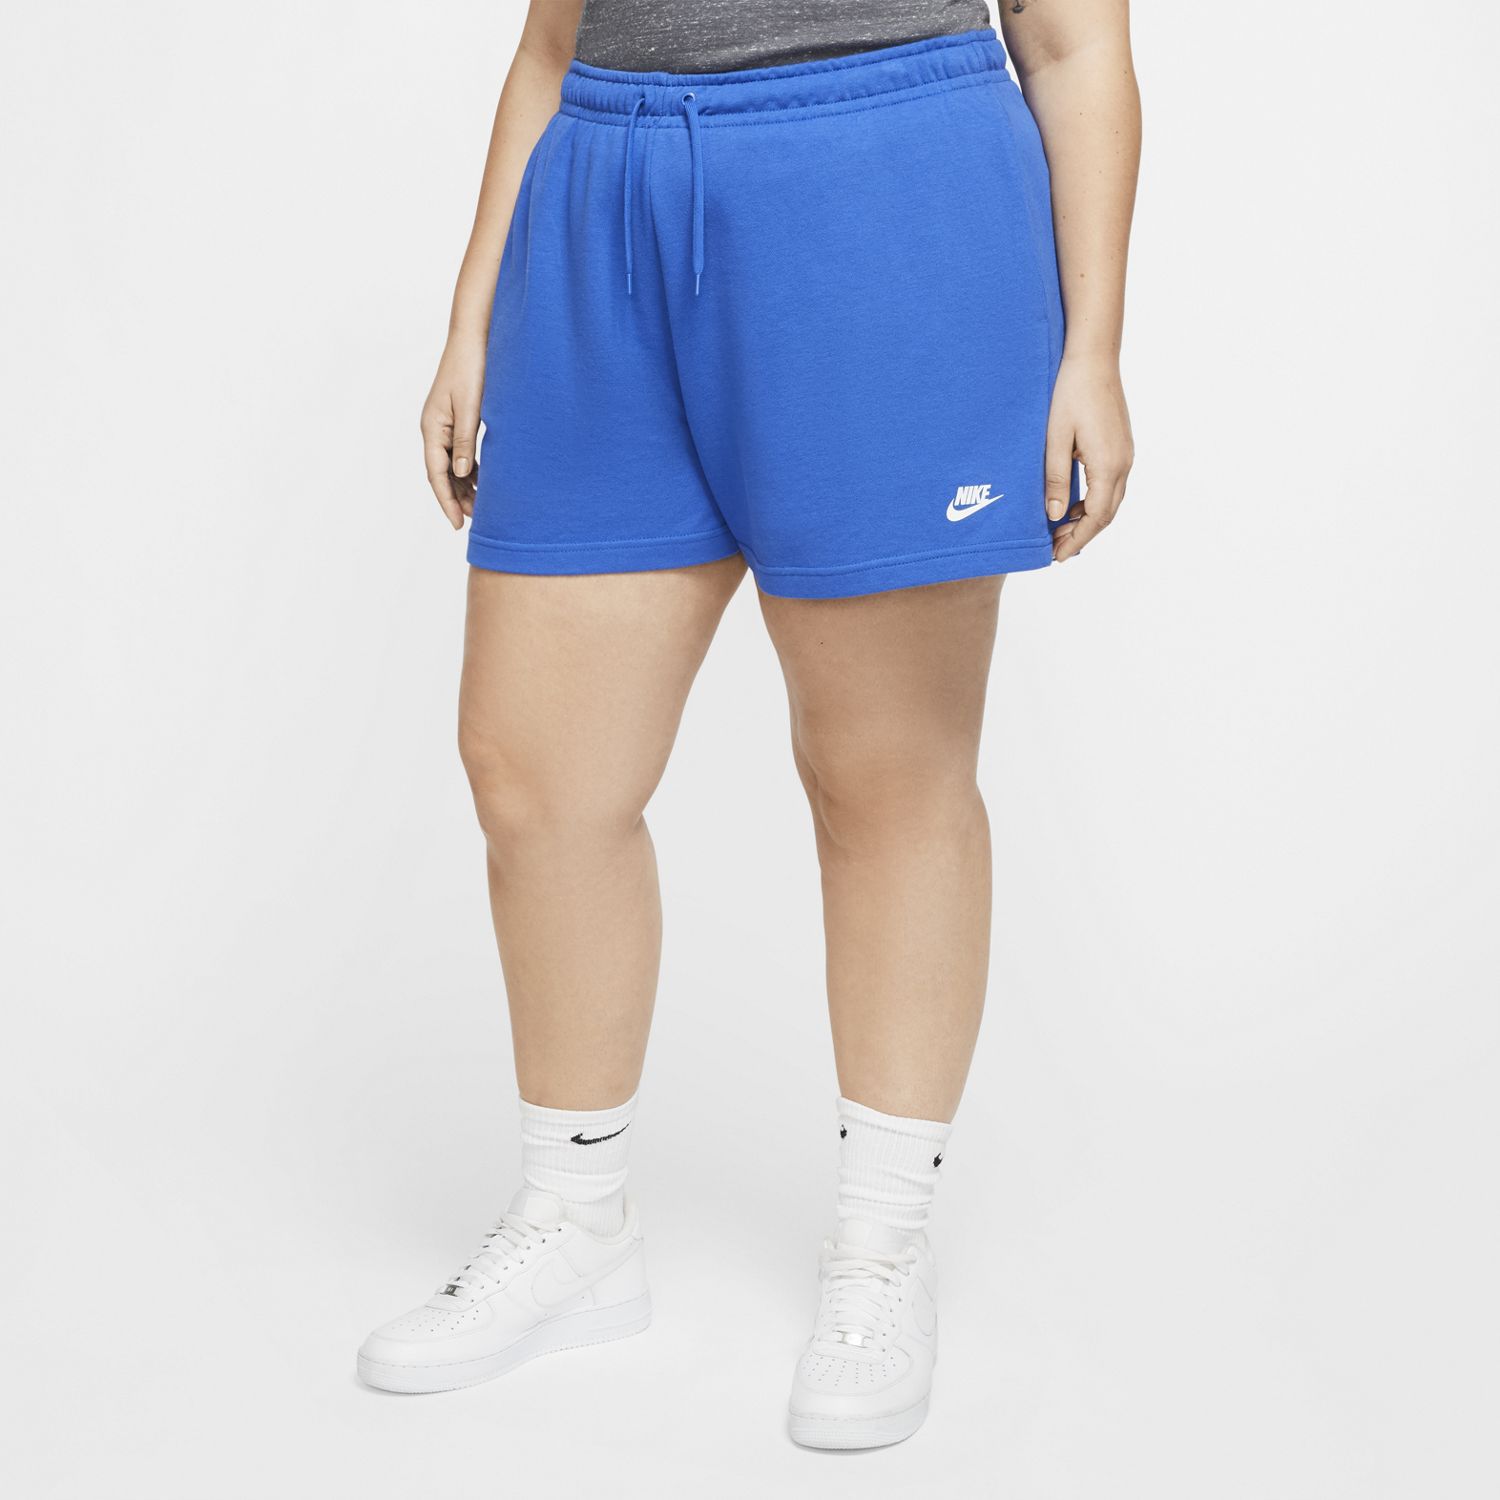 Women's Nike Shorts: Shop New Bottoms 